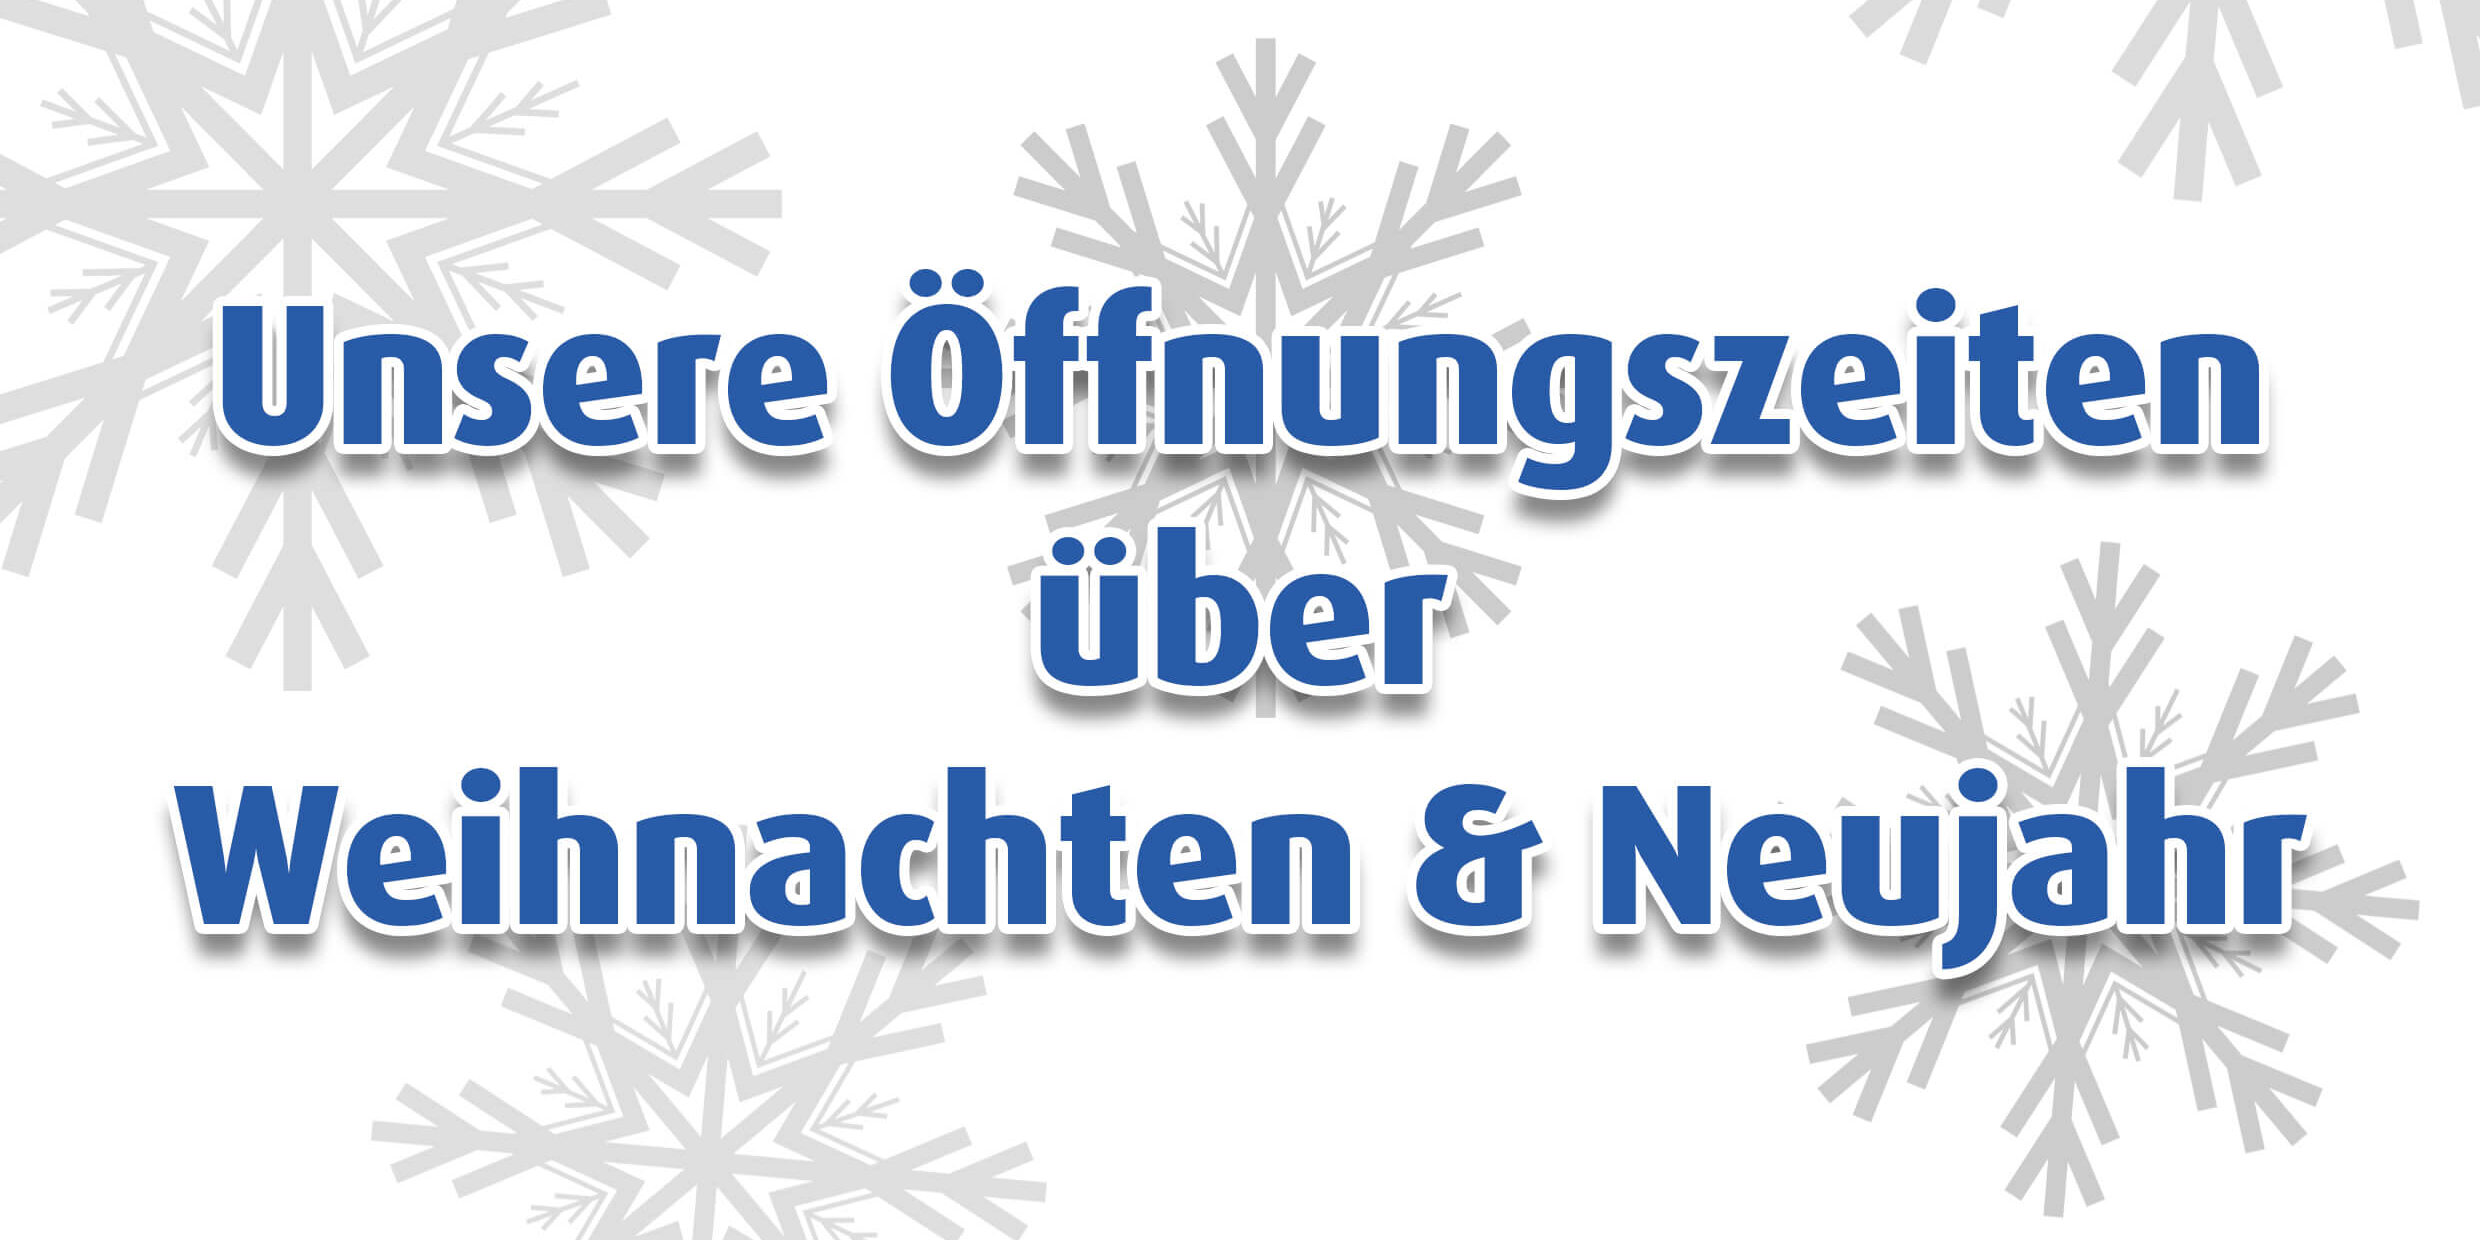 Öffnungszeiten Weihnachten & Neujahr - Heusser Orthopädie-Technik AG